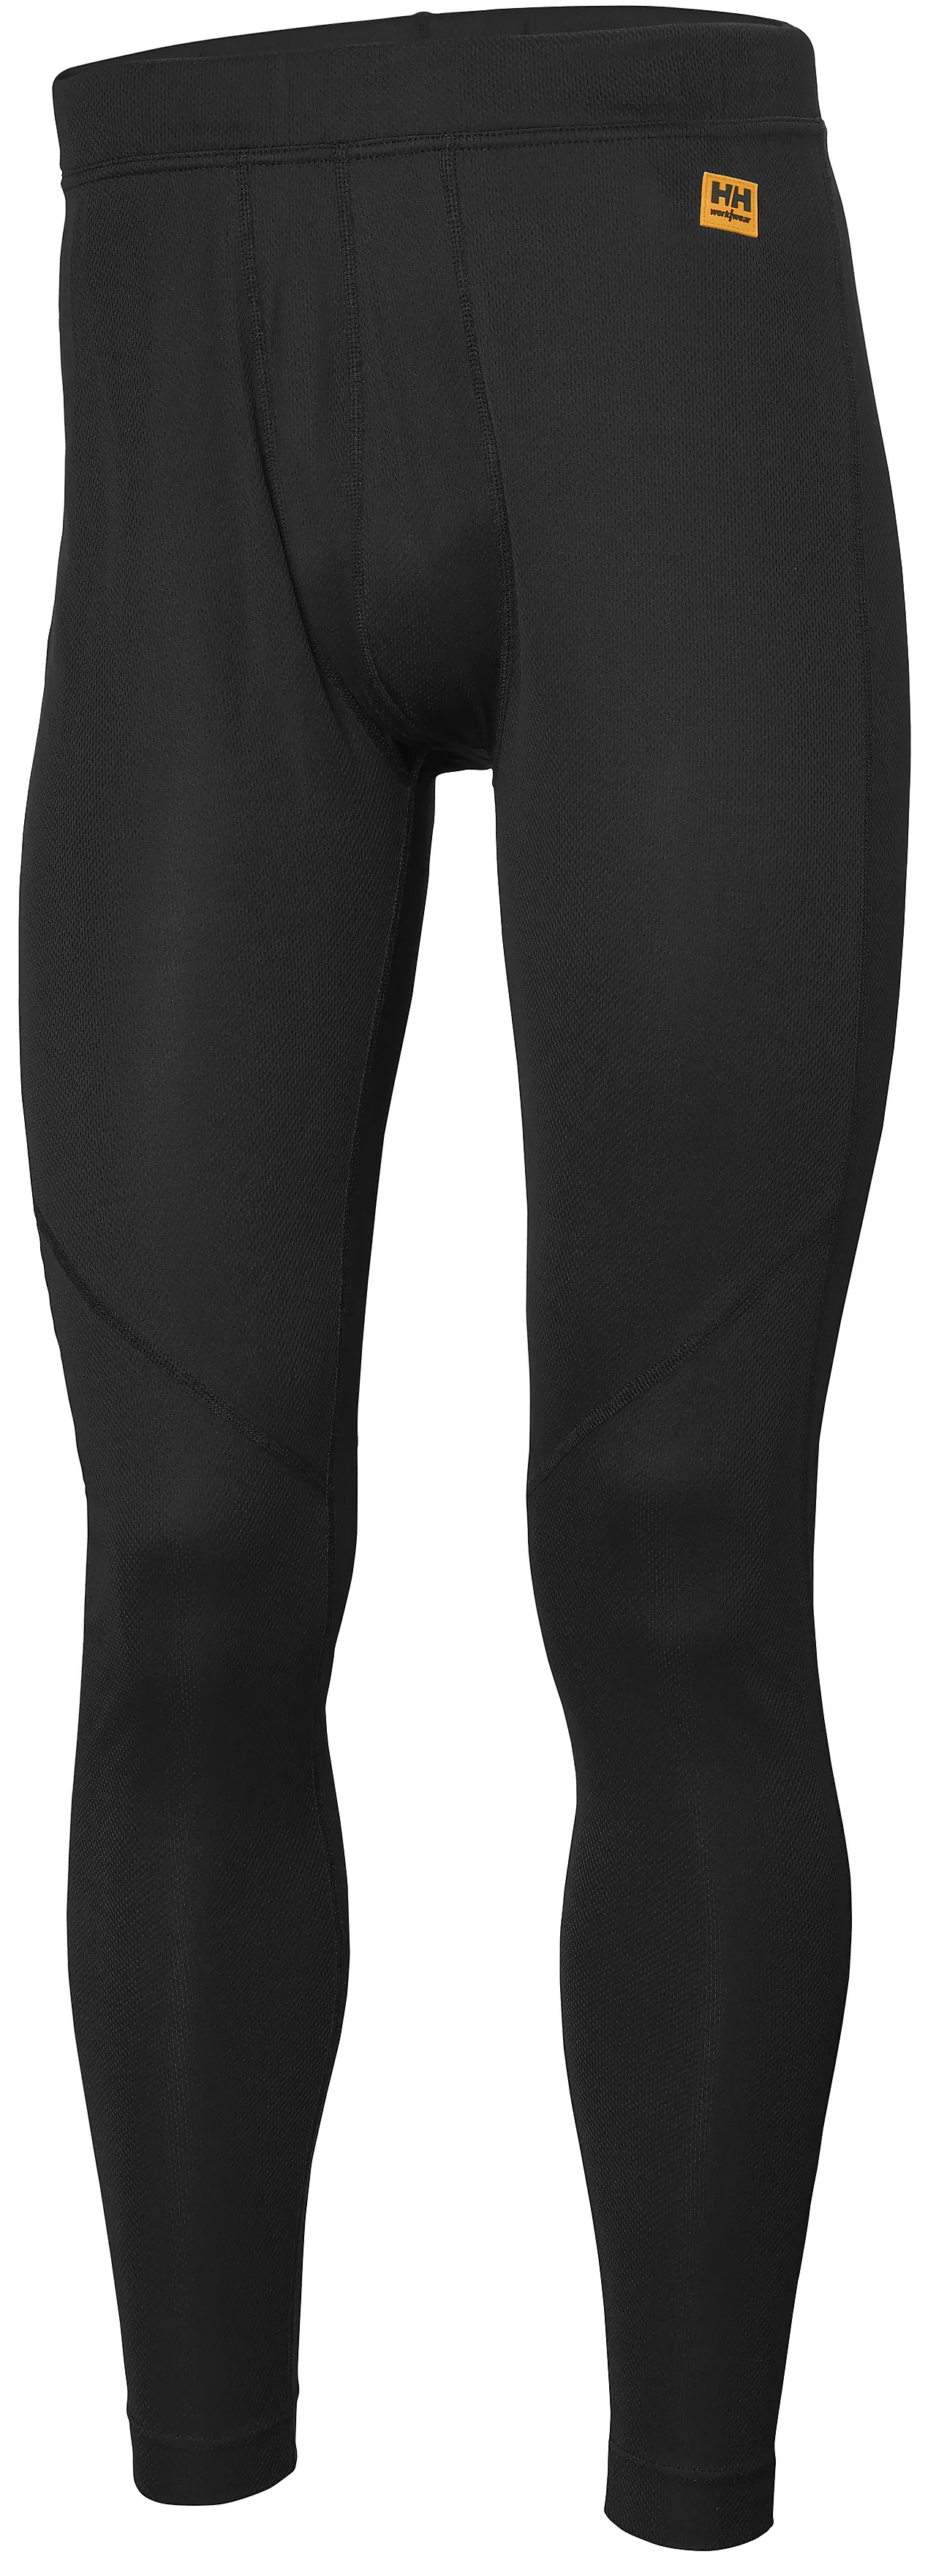 Bukse undertøy sort 3xl lifamax baselayer bukse